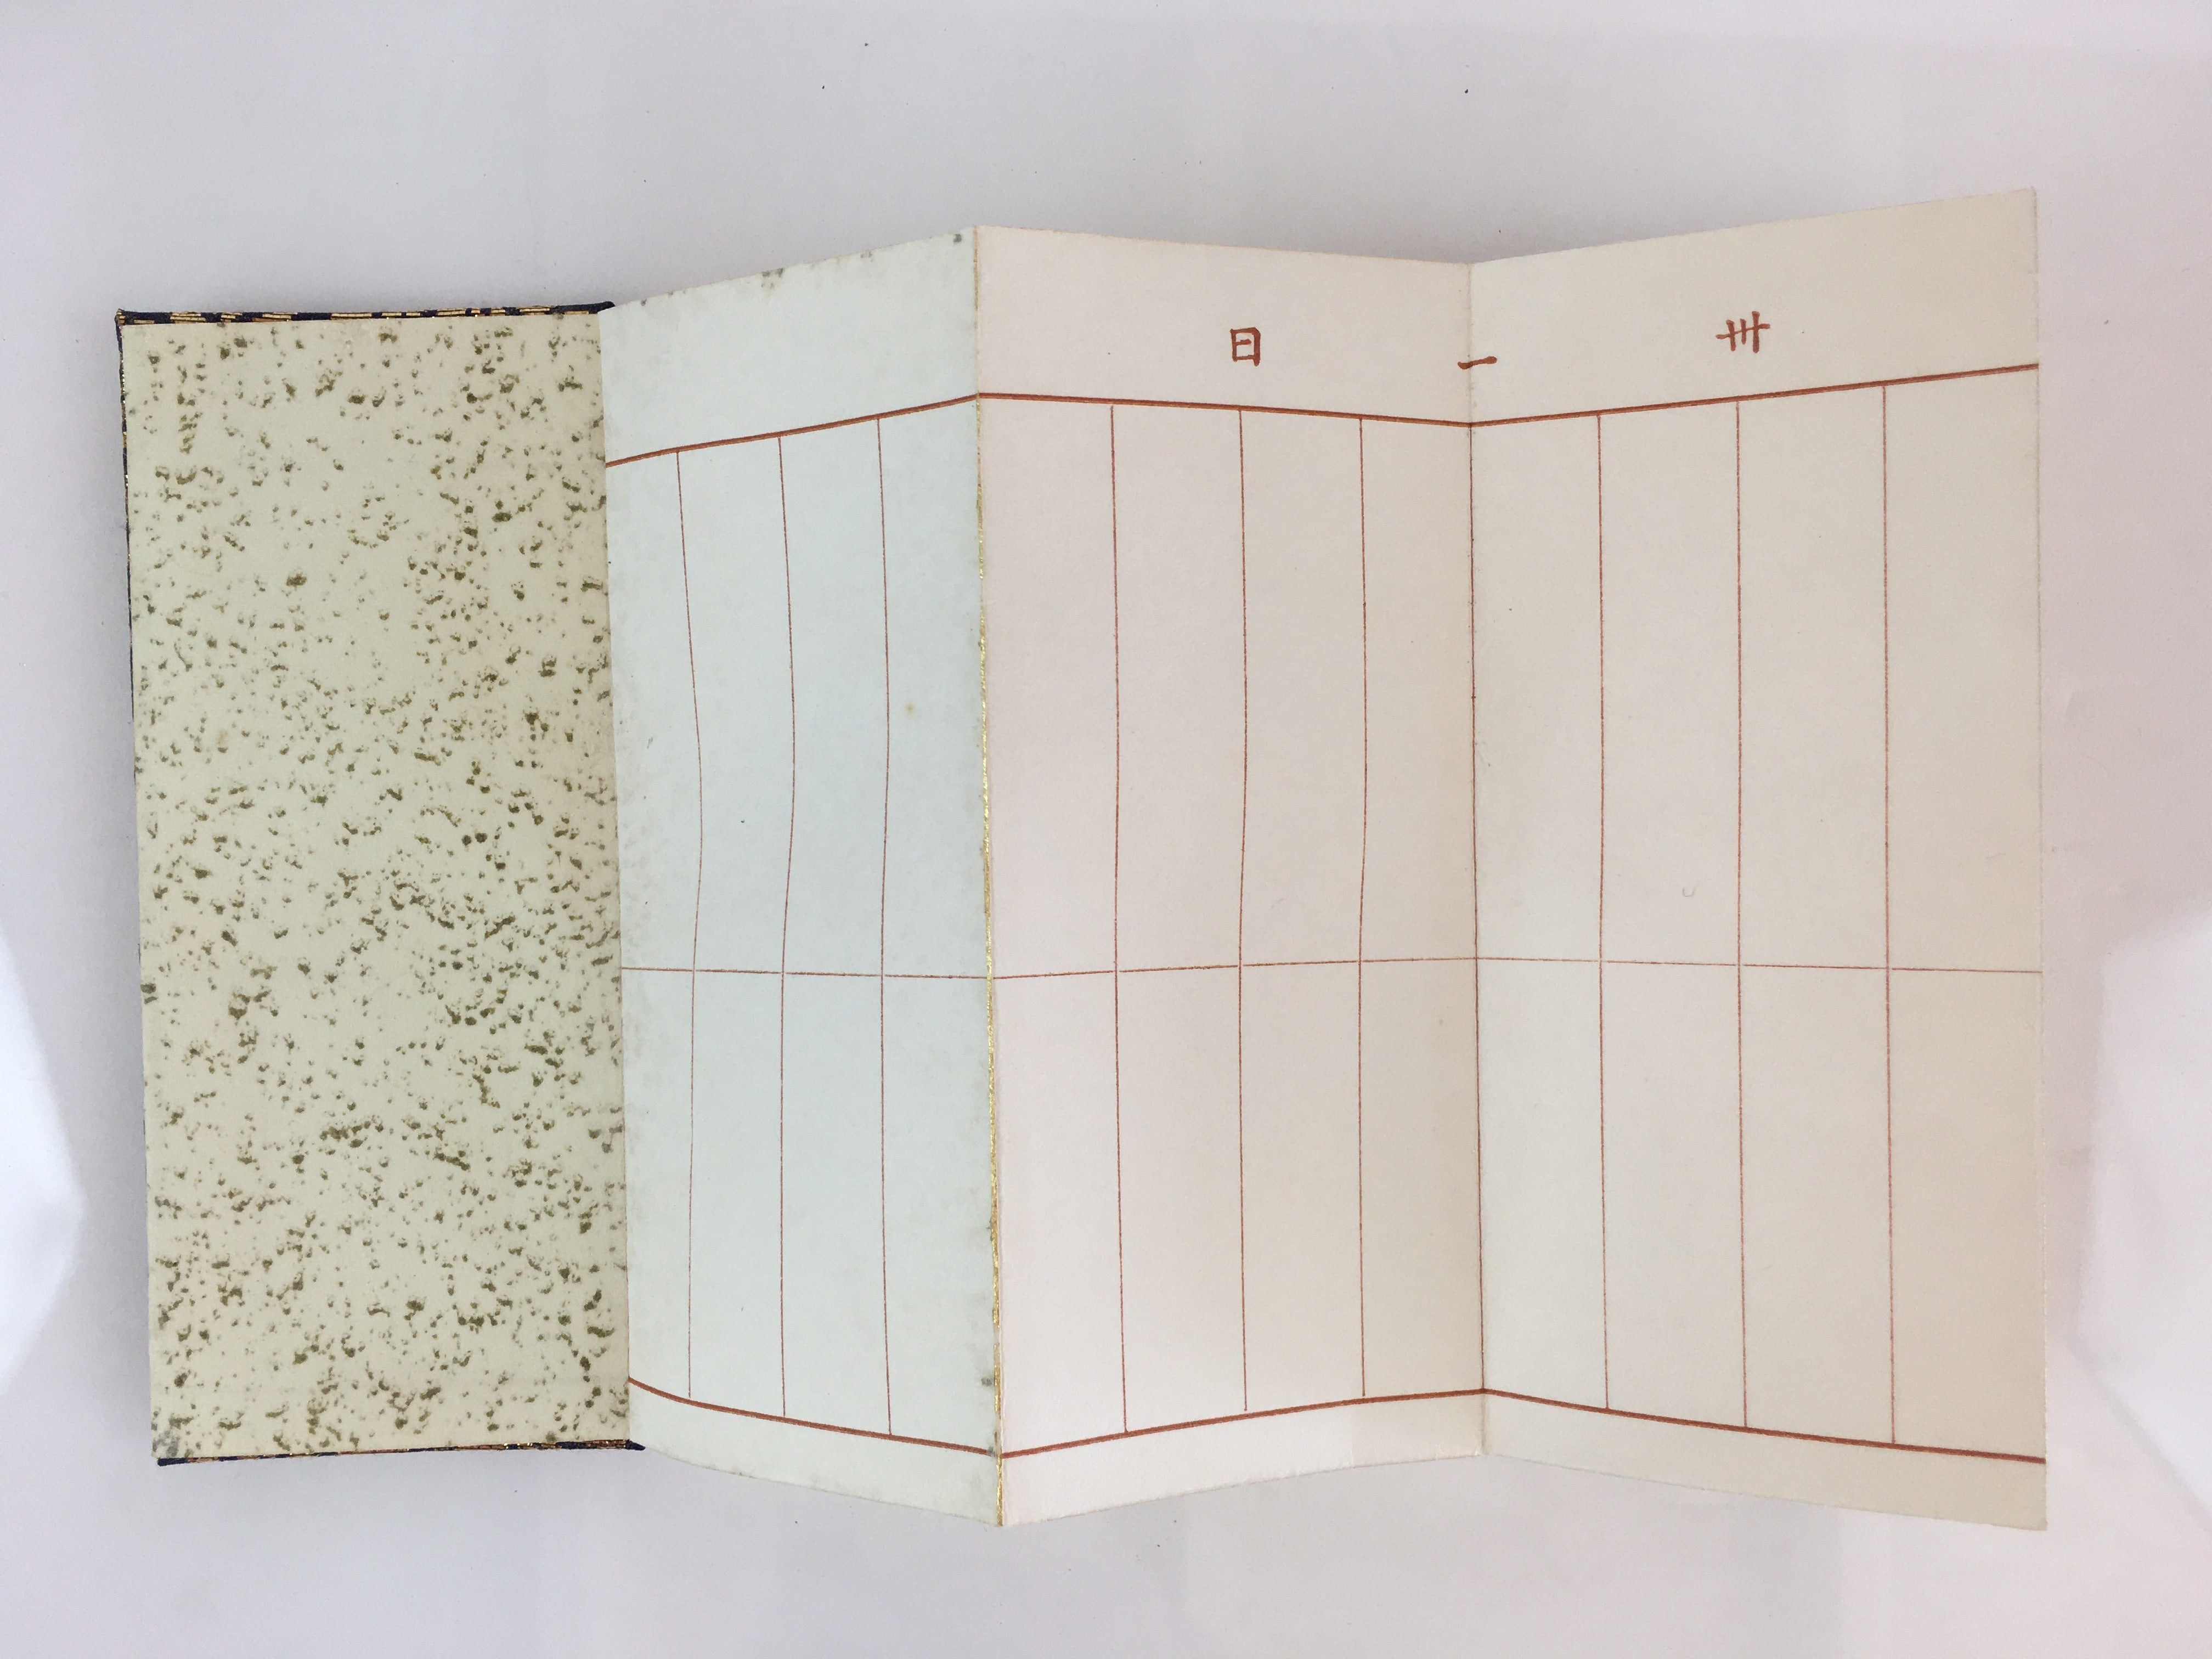 Japanese Buddhist Prayer Book Notepad Kakocho Vtg Paper Blue Fabric BU761